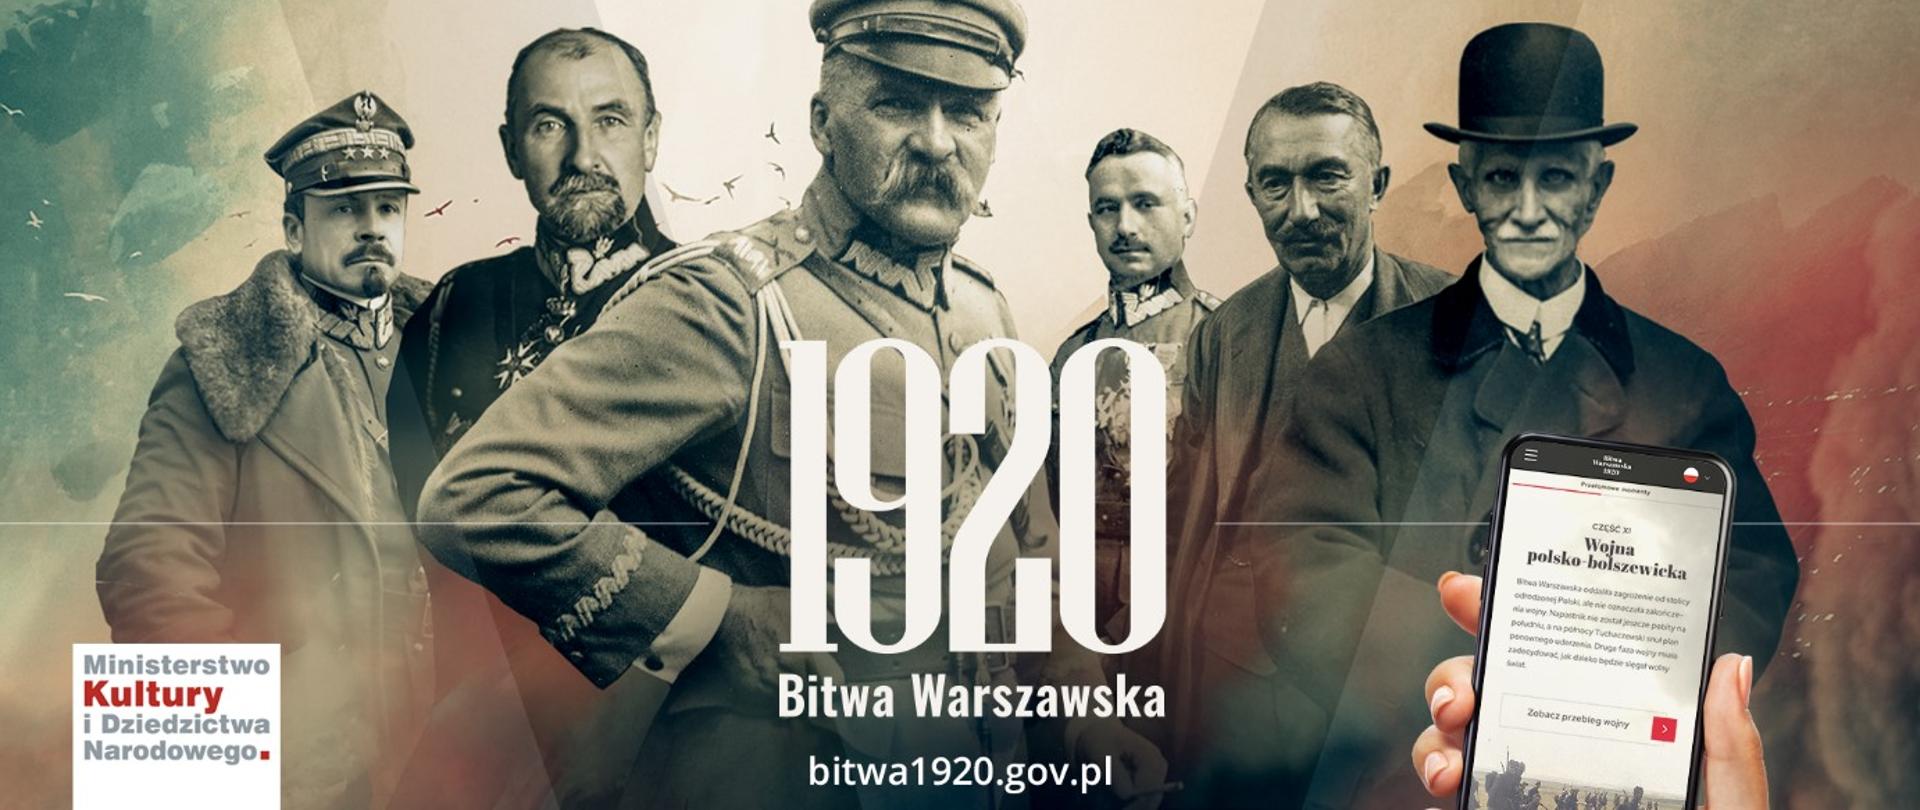 Bitwa1920.gov.pl Narracyjny Serwis Internetowy Polskiego Radia I „Niepodległej”